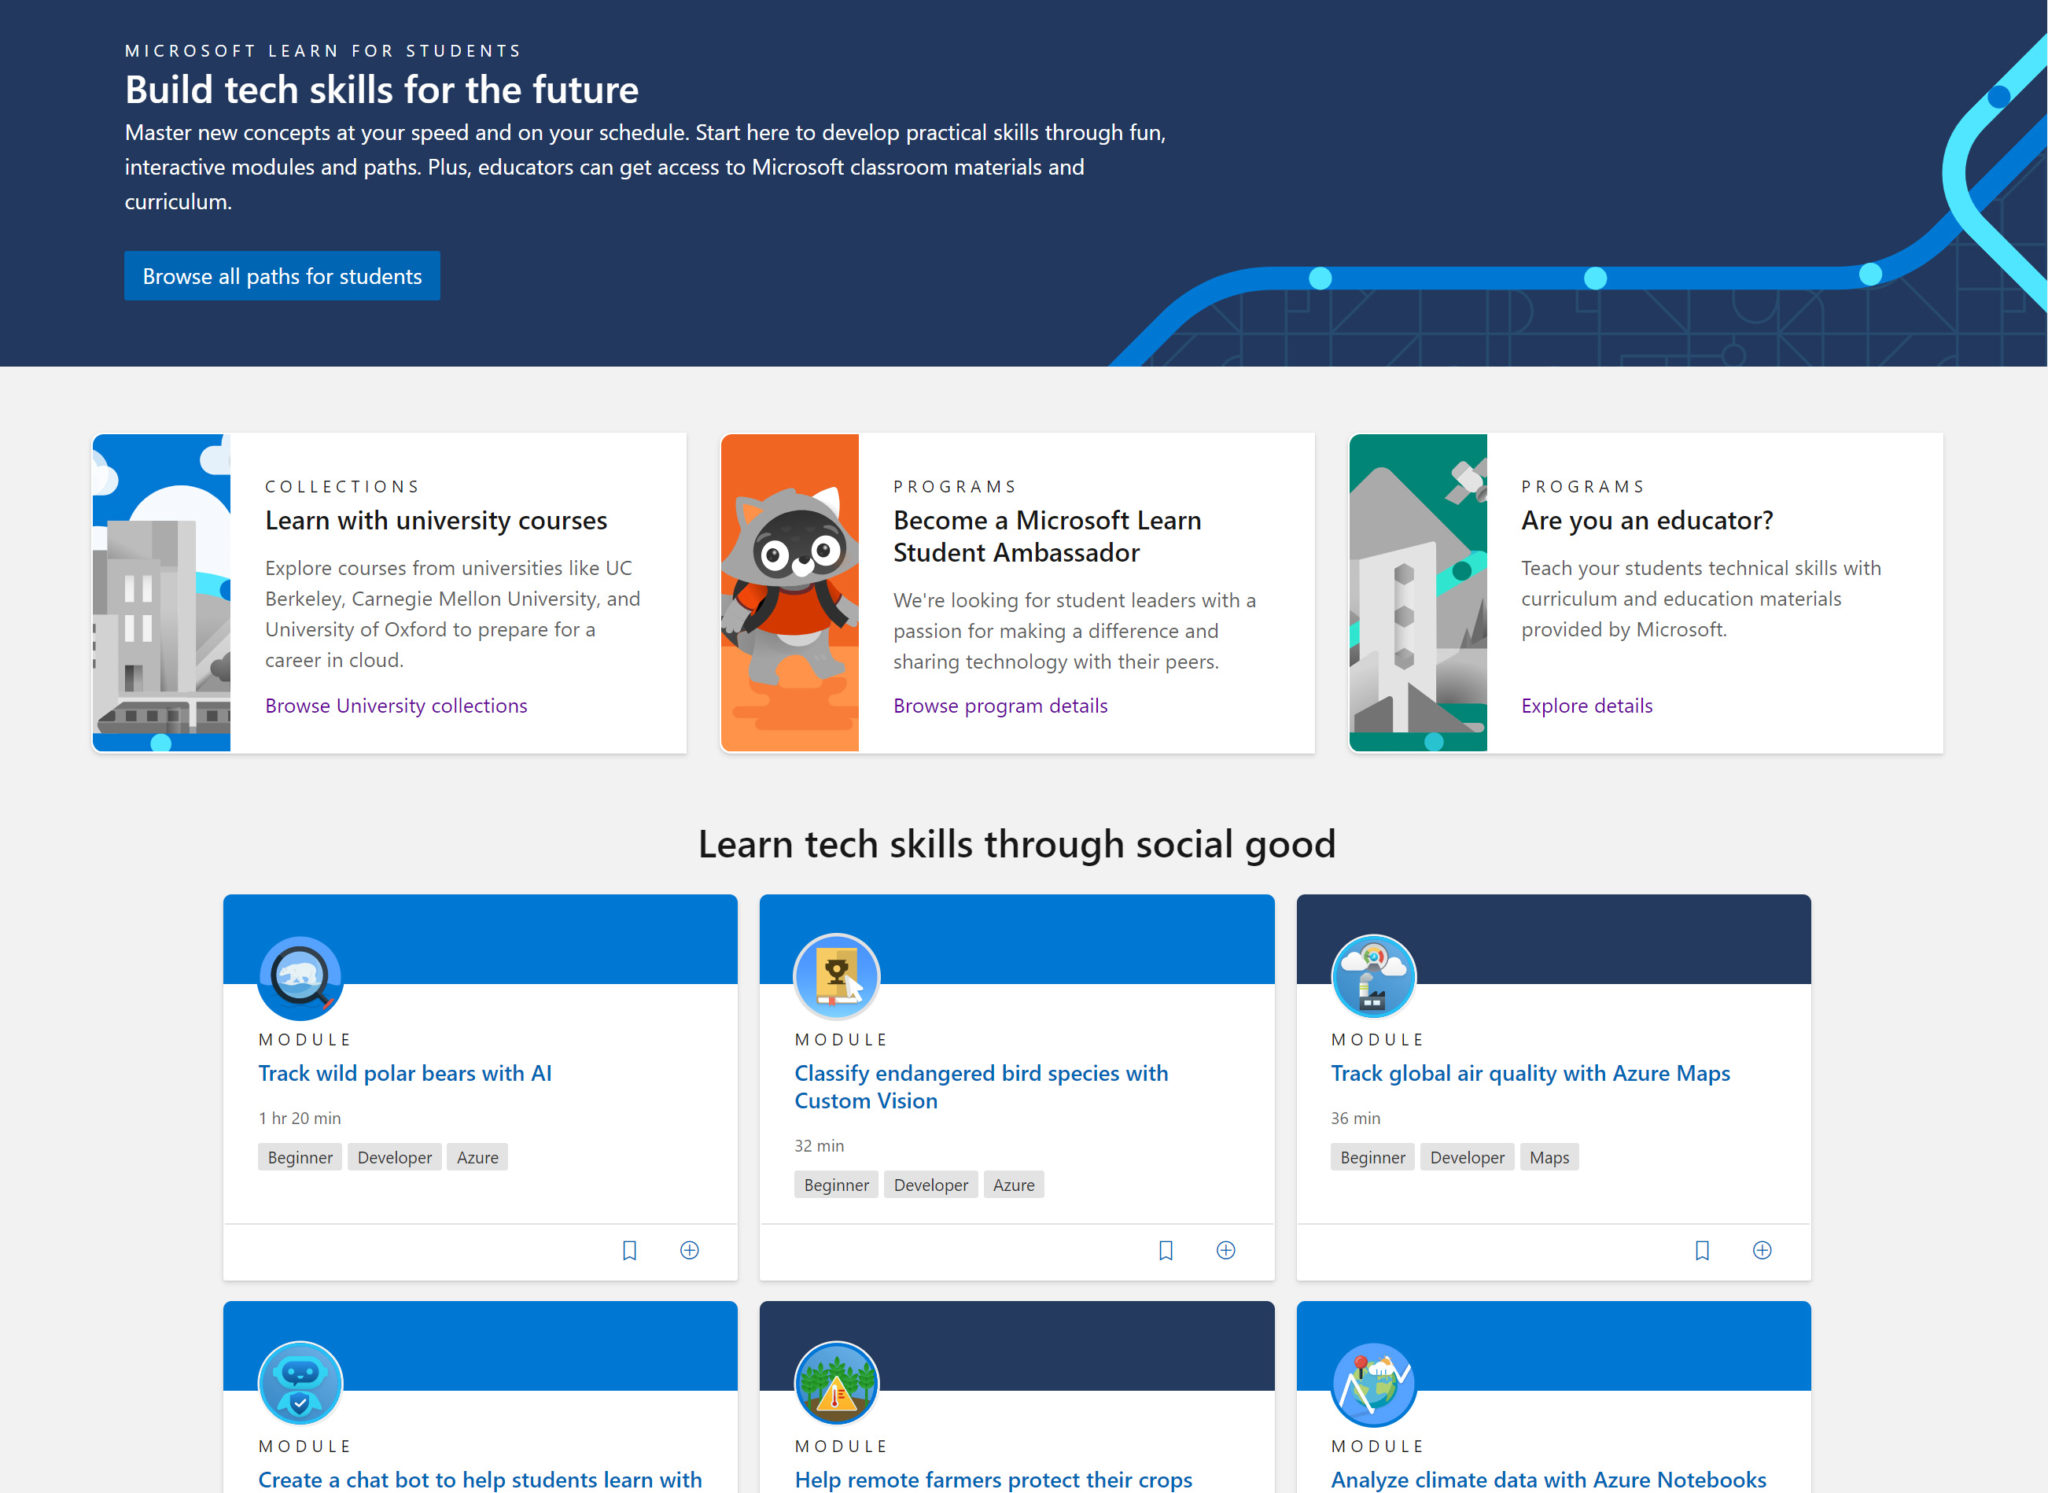 Startseite von Microsoft Learn-Studentenbotschaftern.